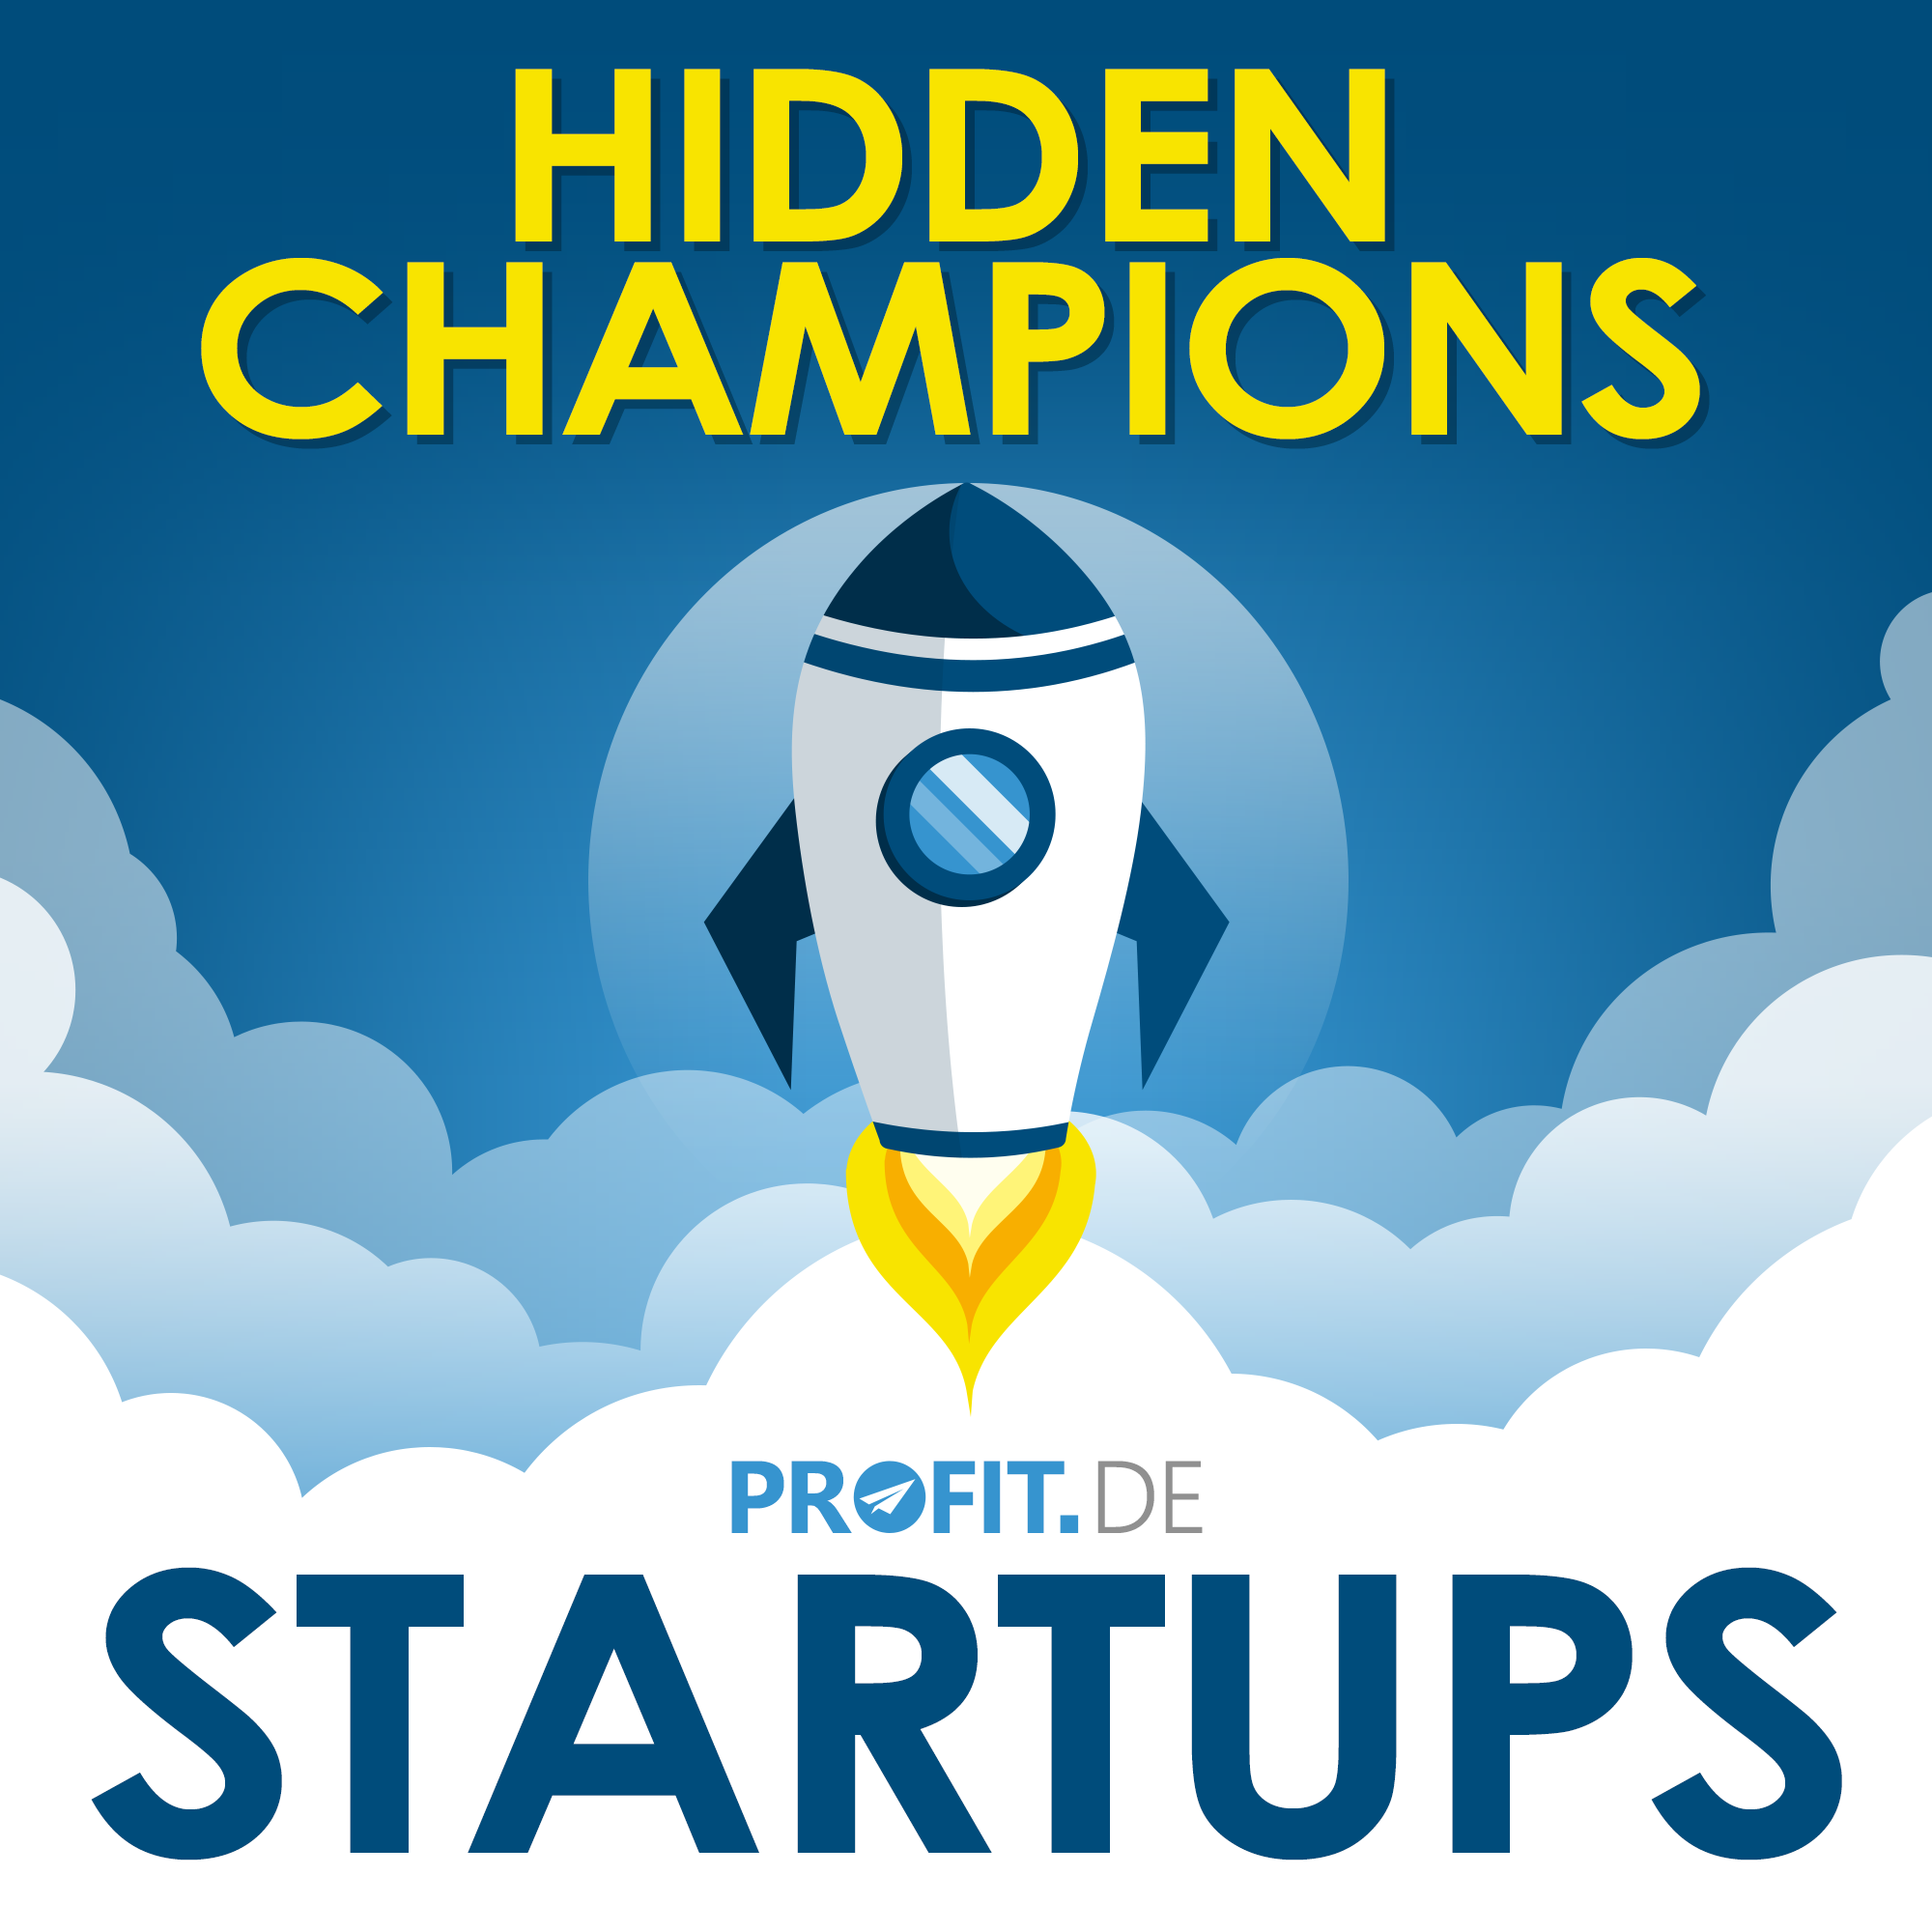 Vorgestellt: Hidden Champions – Der Podcast von Profit.de